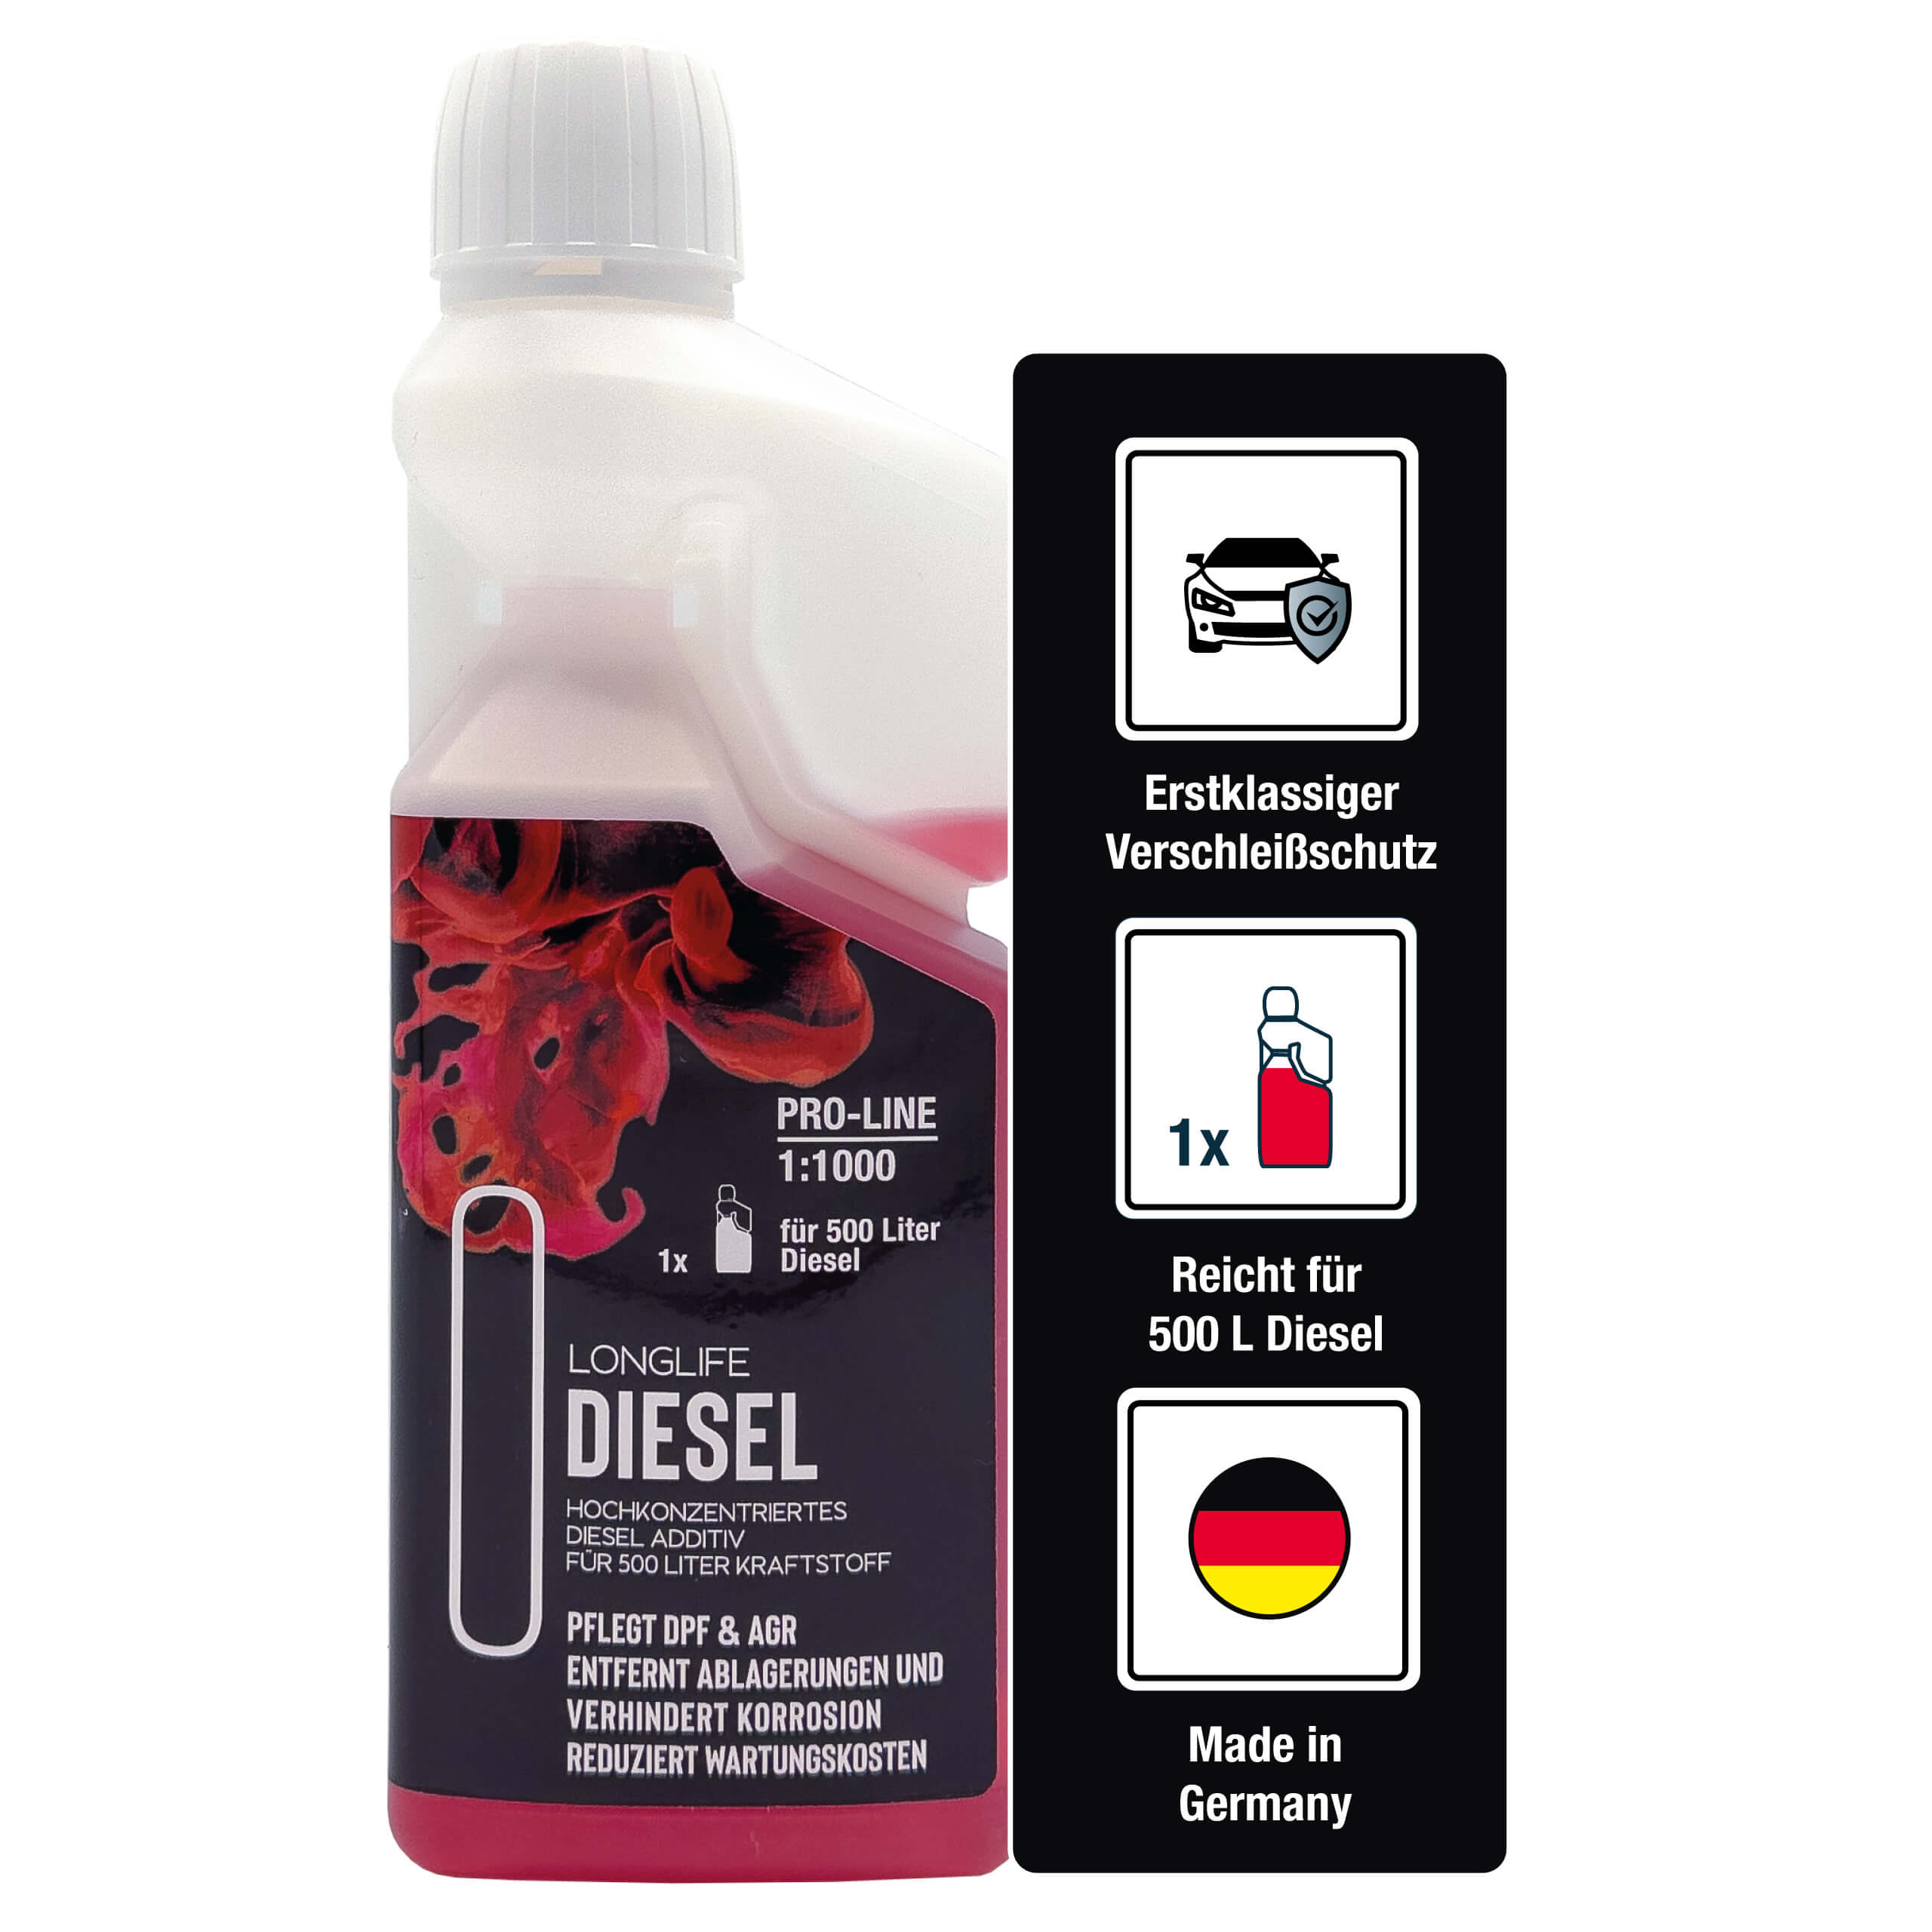 Longlife DIESEL Pro-Line | Diesel Additiv - reicht für 500 Liter Diesel | 500ml